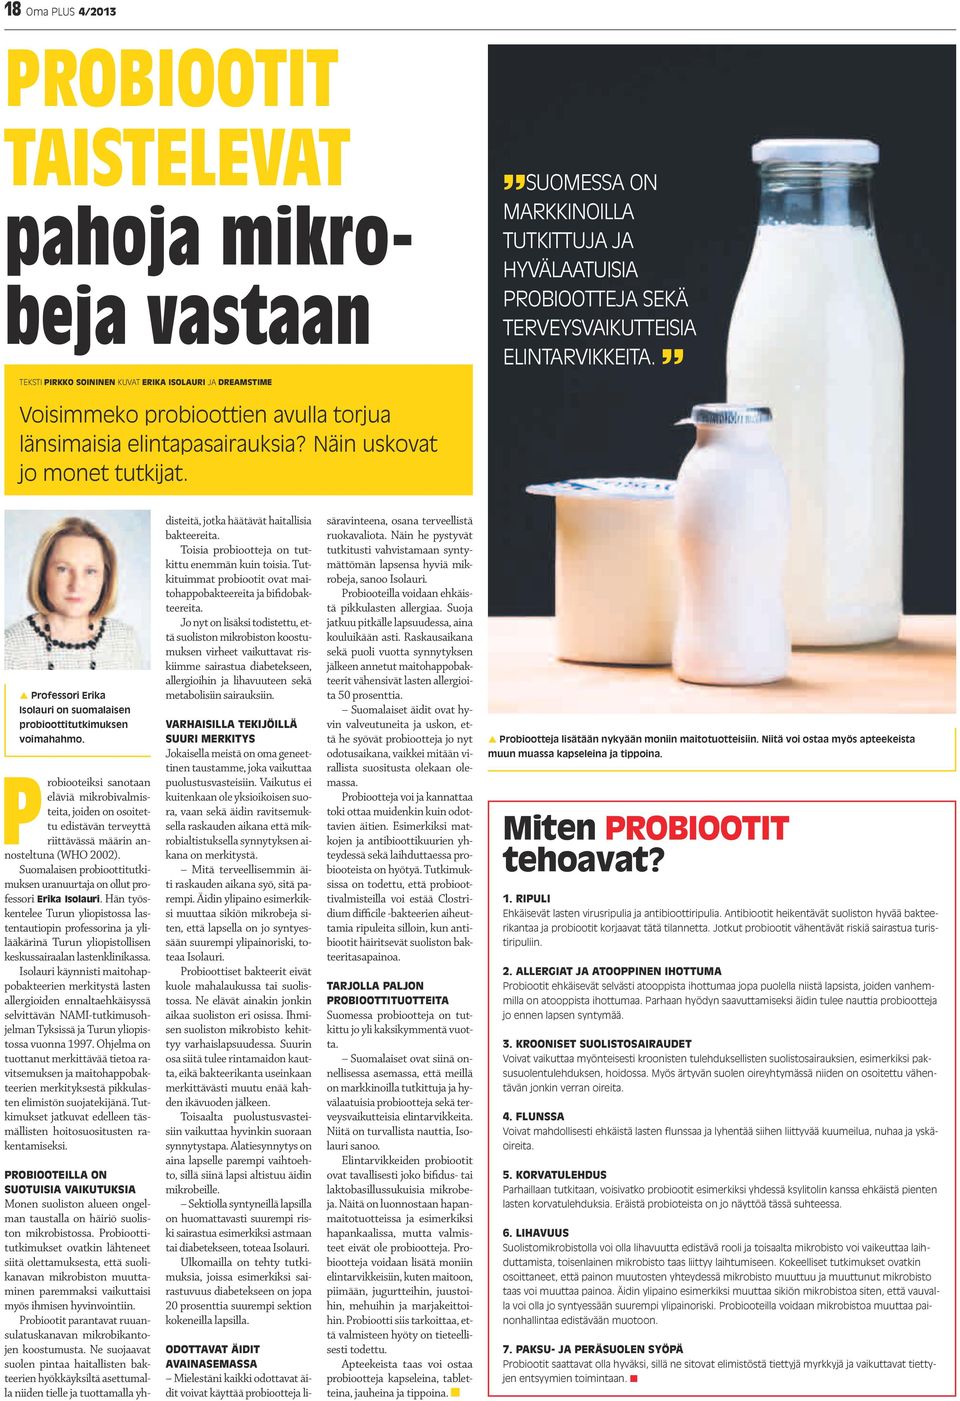 p Professori Erika Isolauri on suomalaisen probioottitutkimuksen voimahahmo.